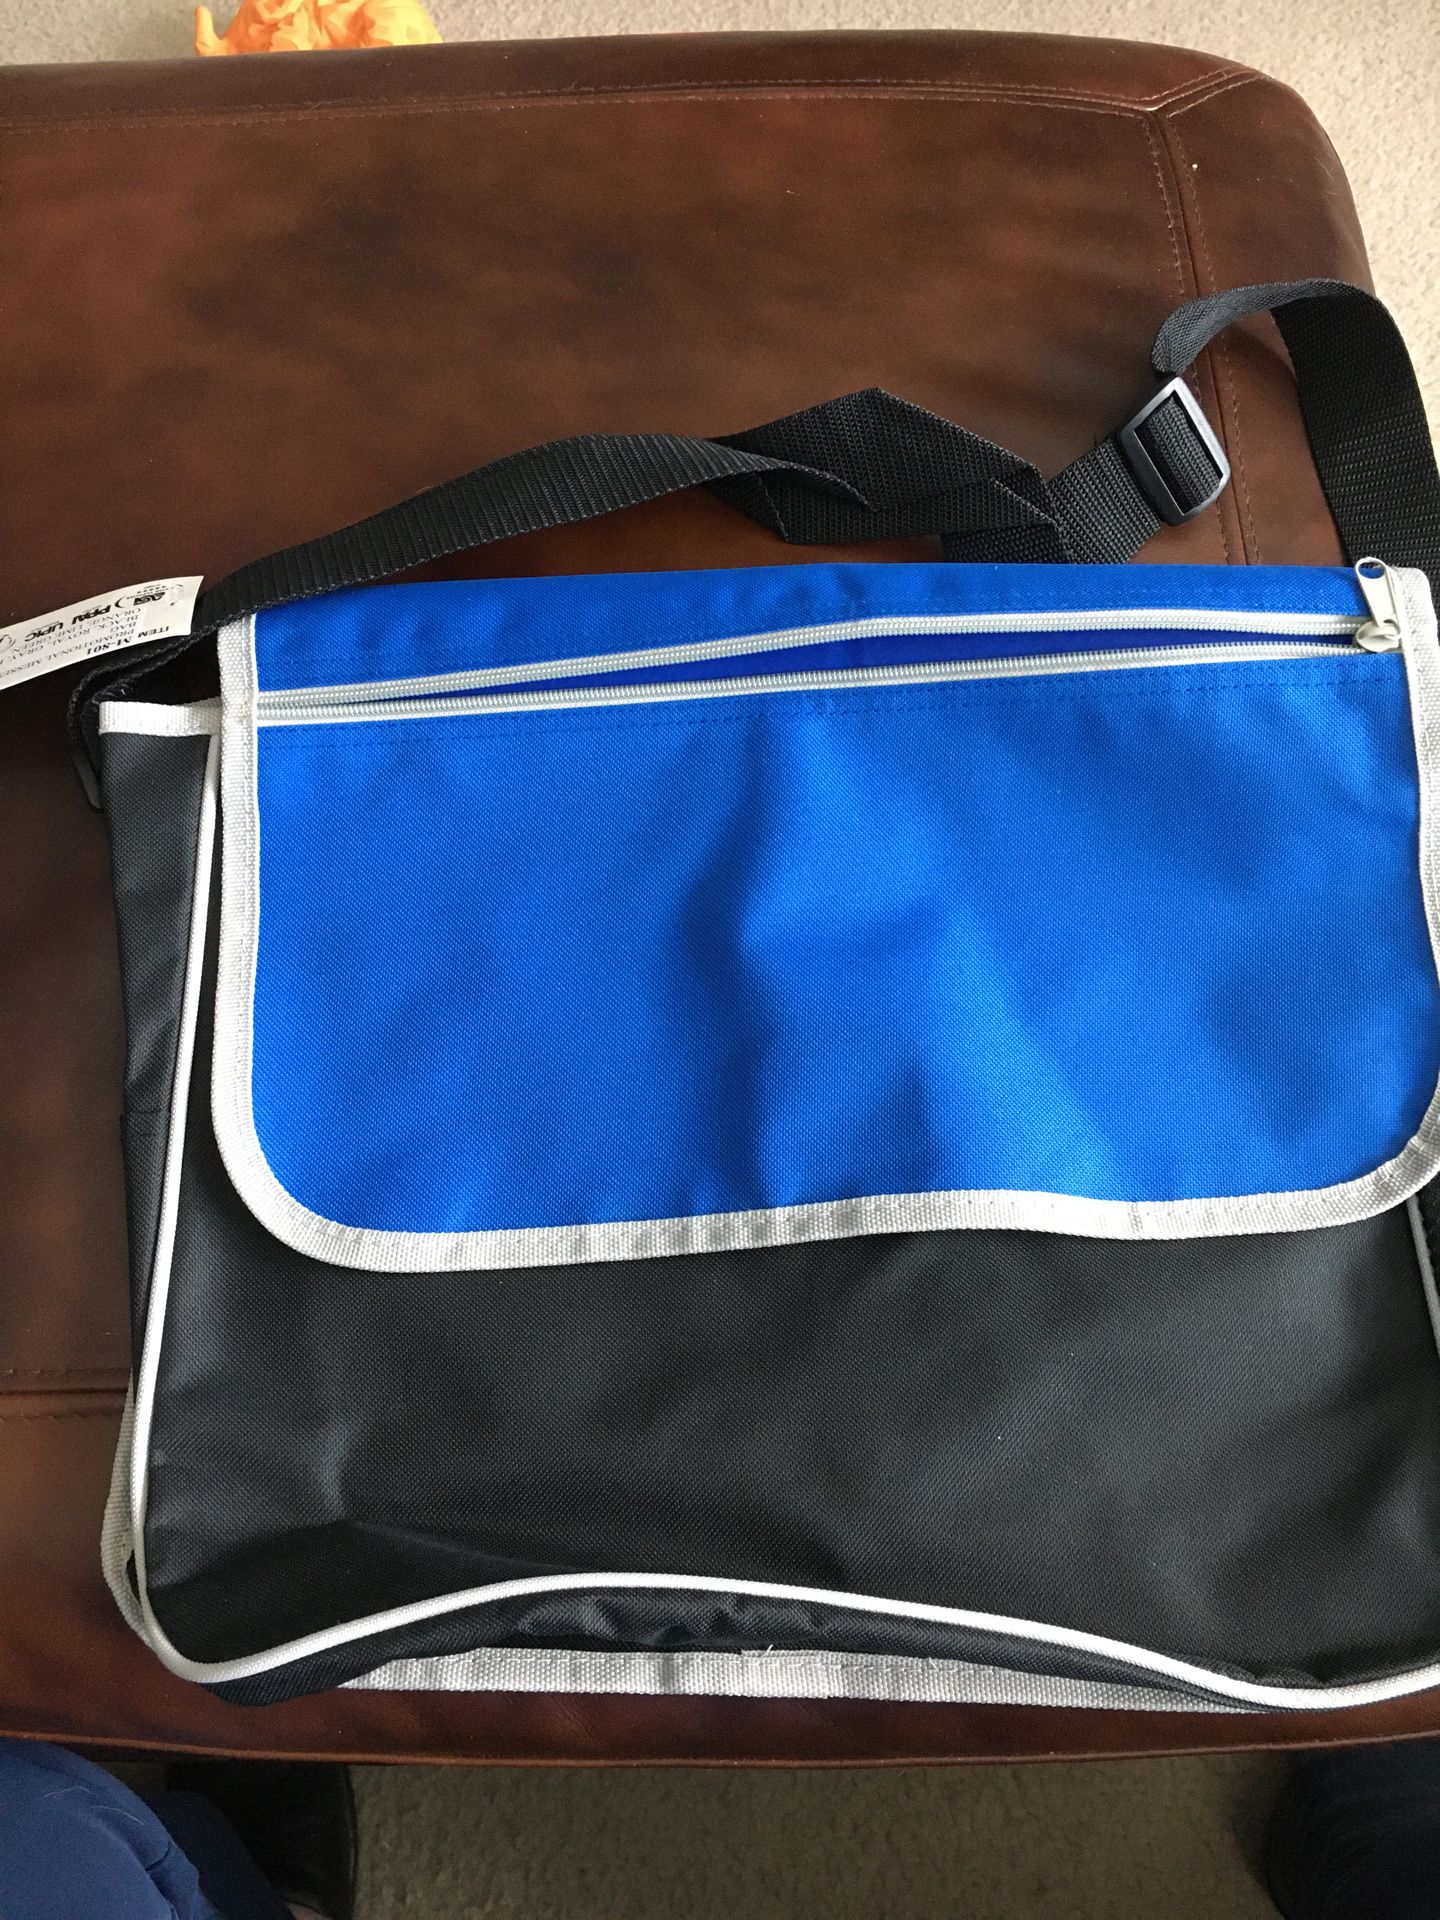 New messenger bag-back pack- book bag